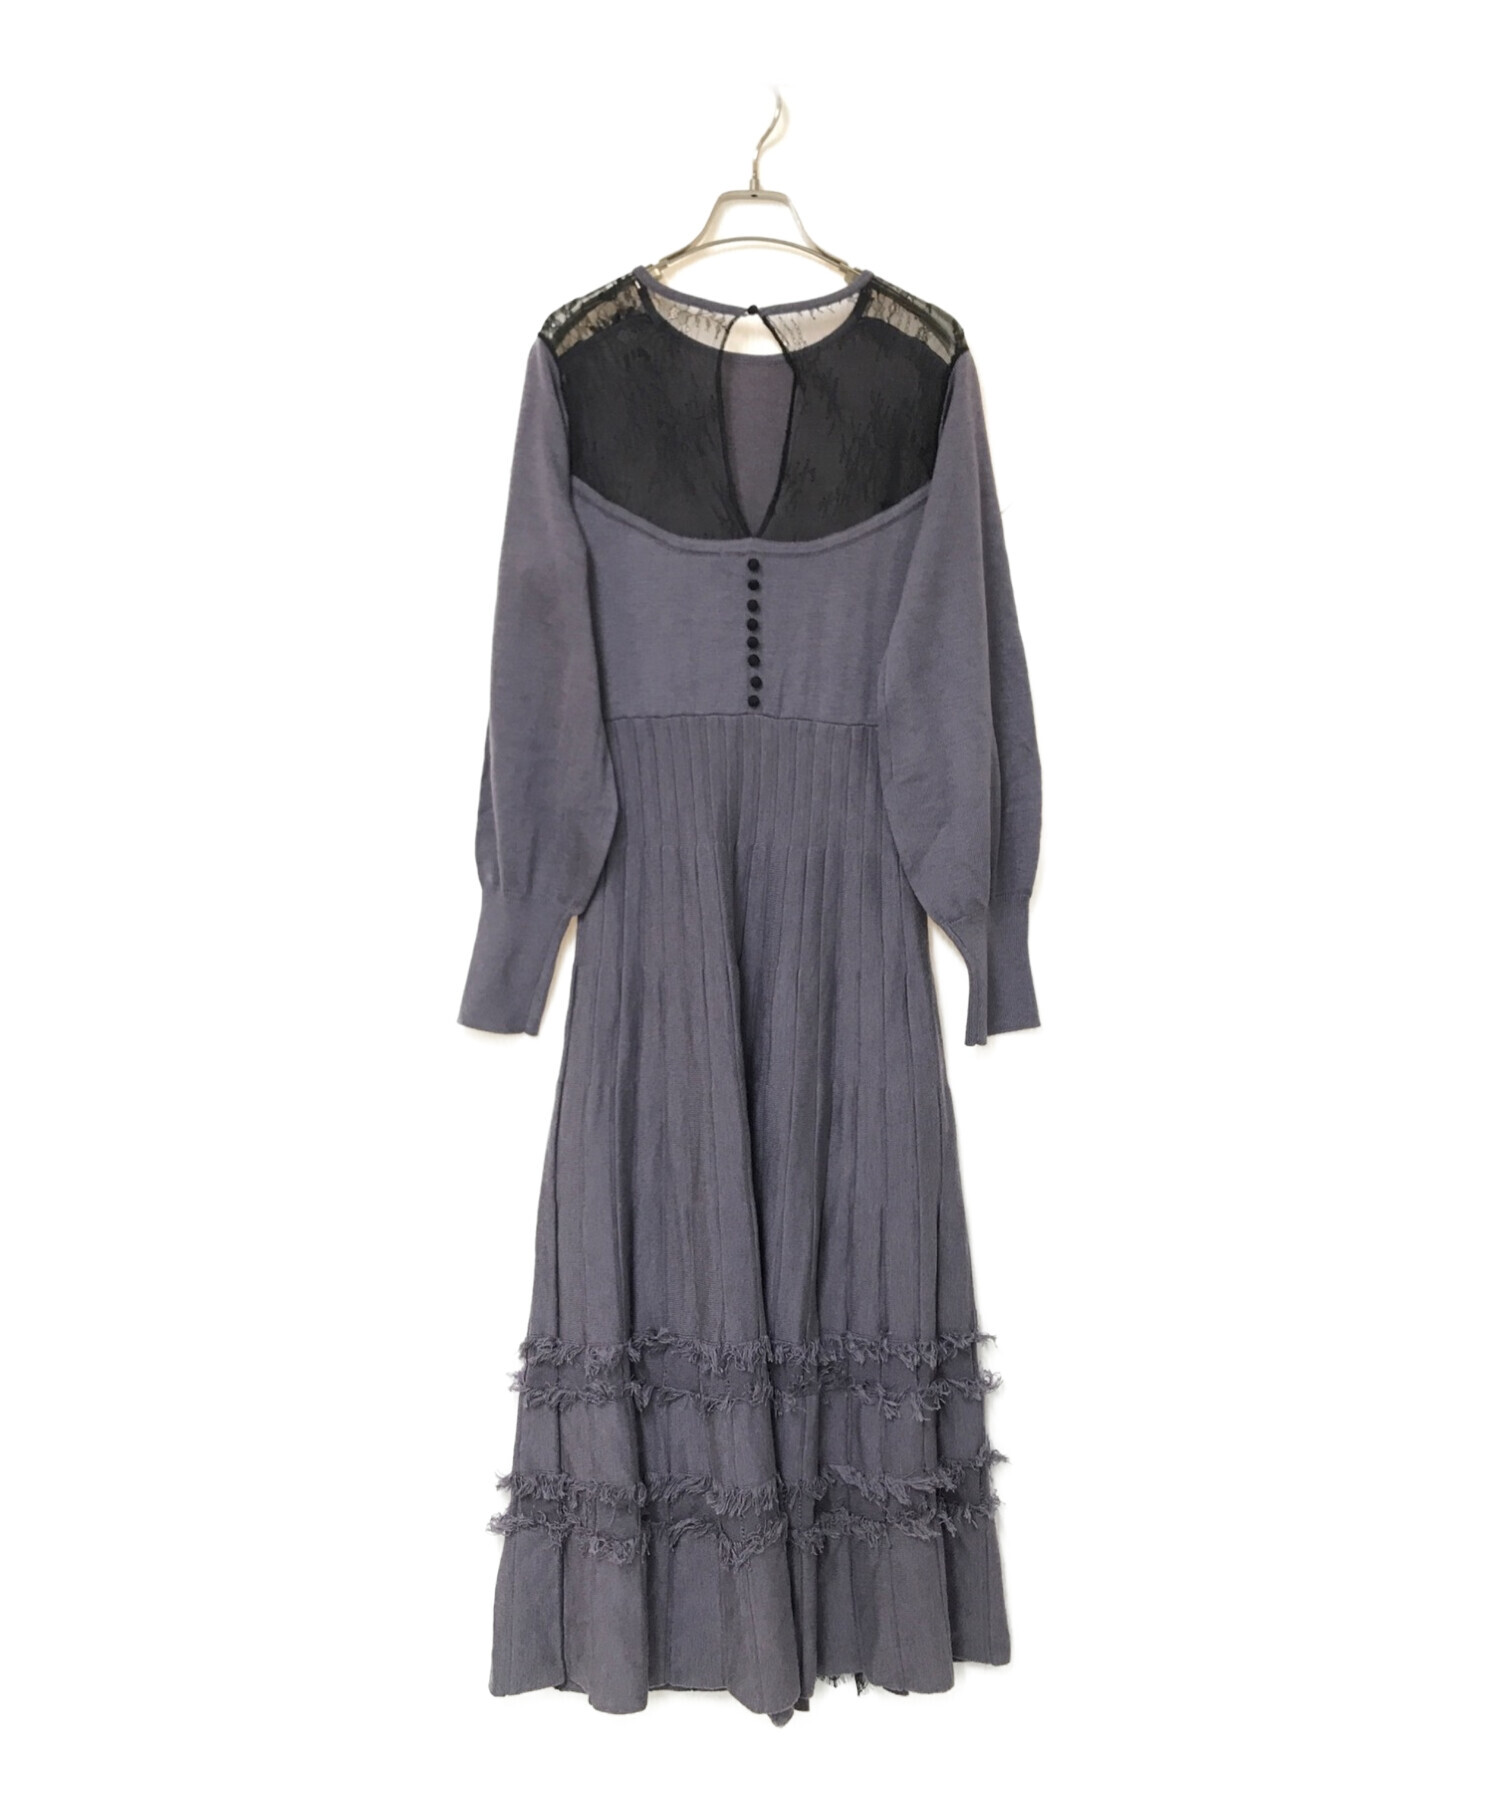 6,880円＊her lip to Lace Trimmed Knit Long Dress